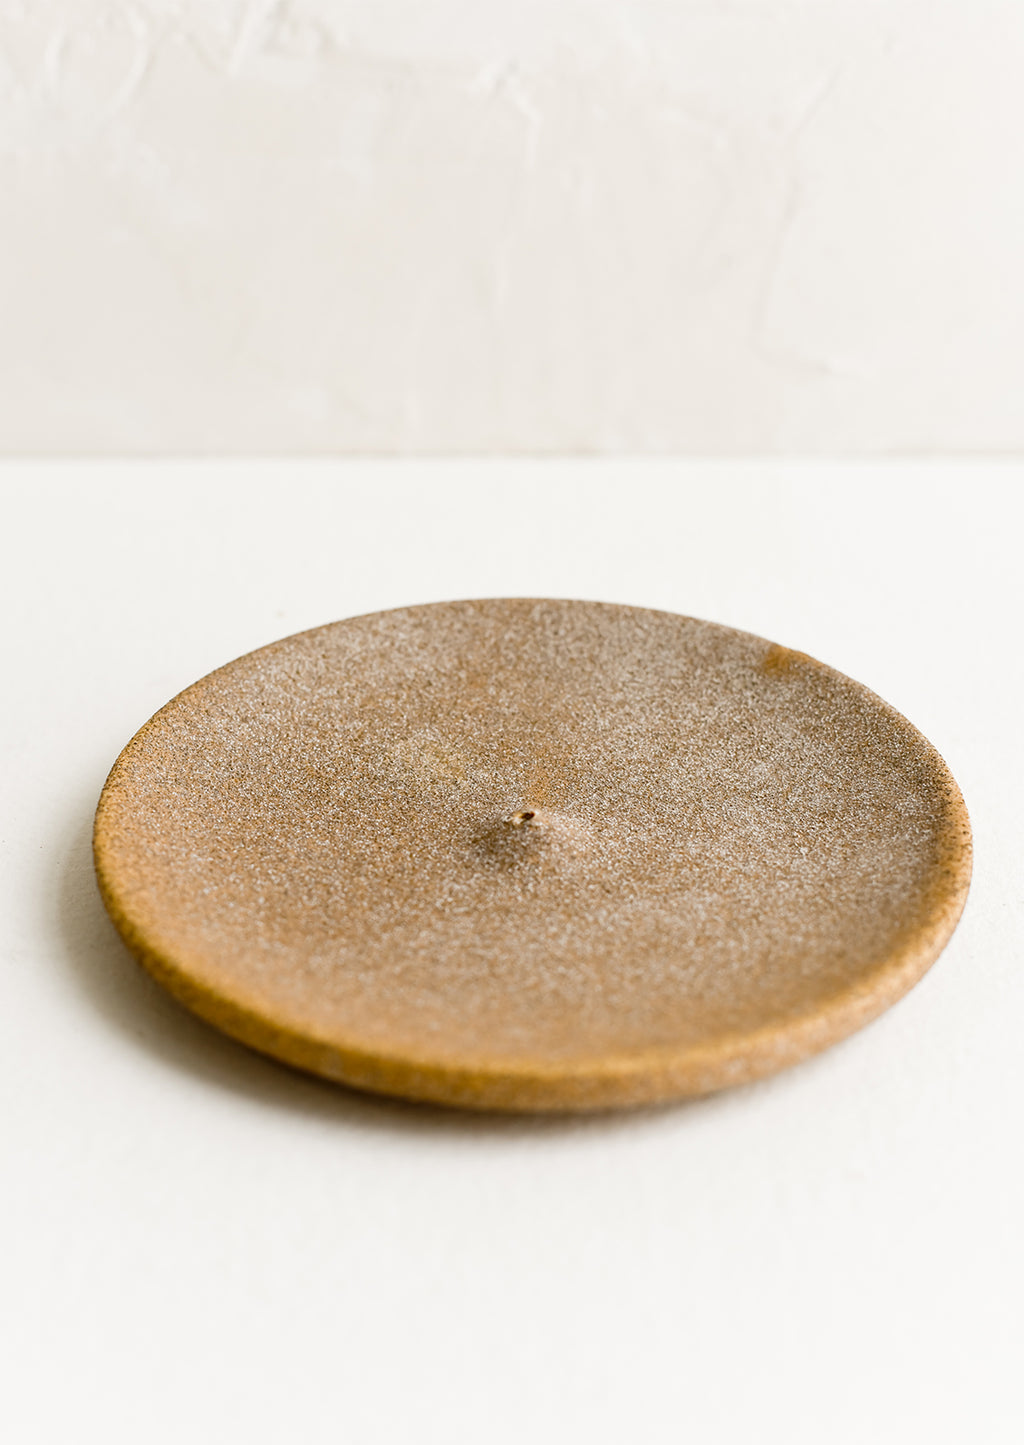 Sandy Brown: A round ceramic incense holder in matte sandy brown.